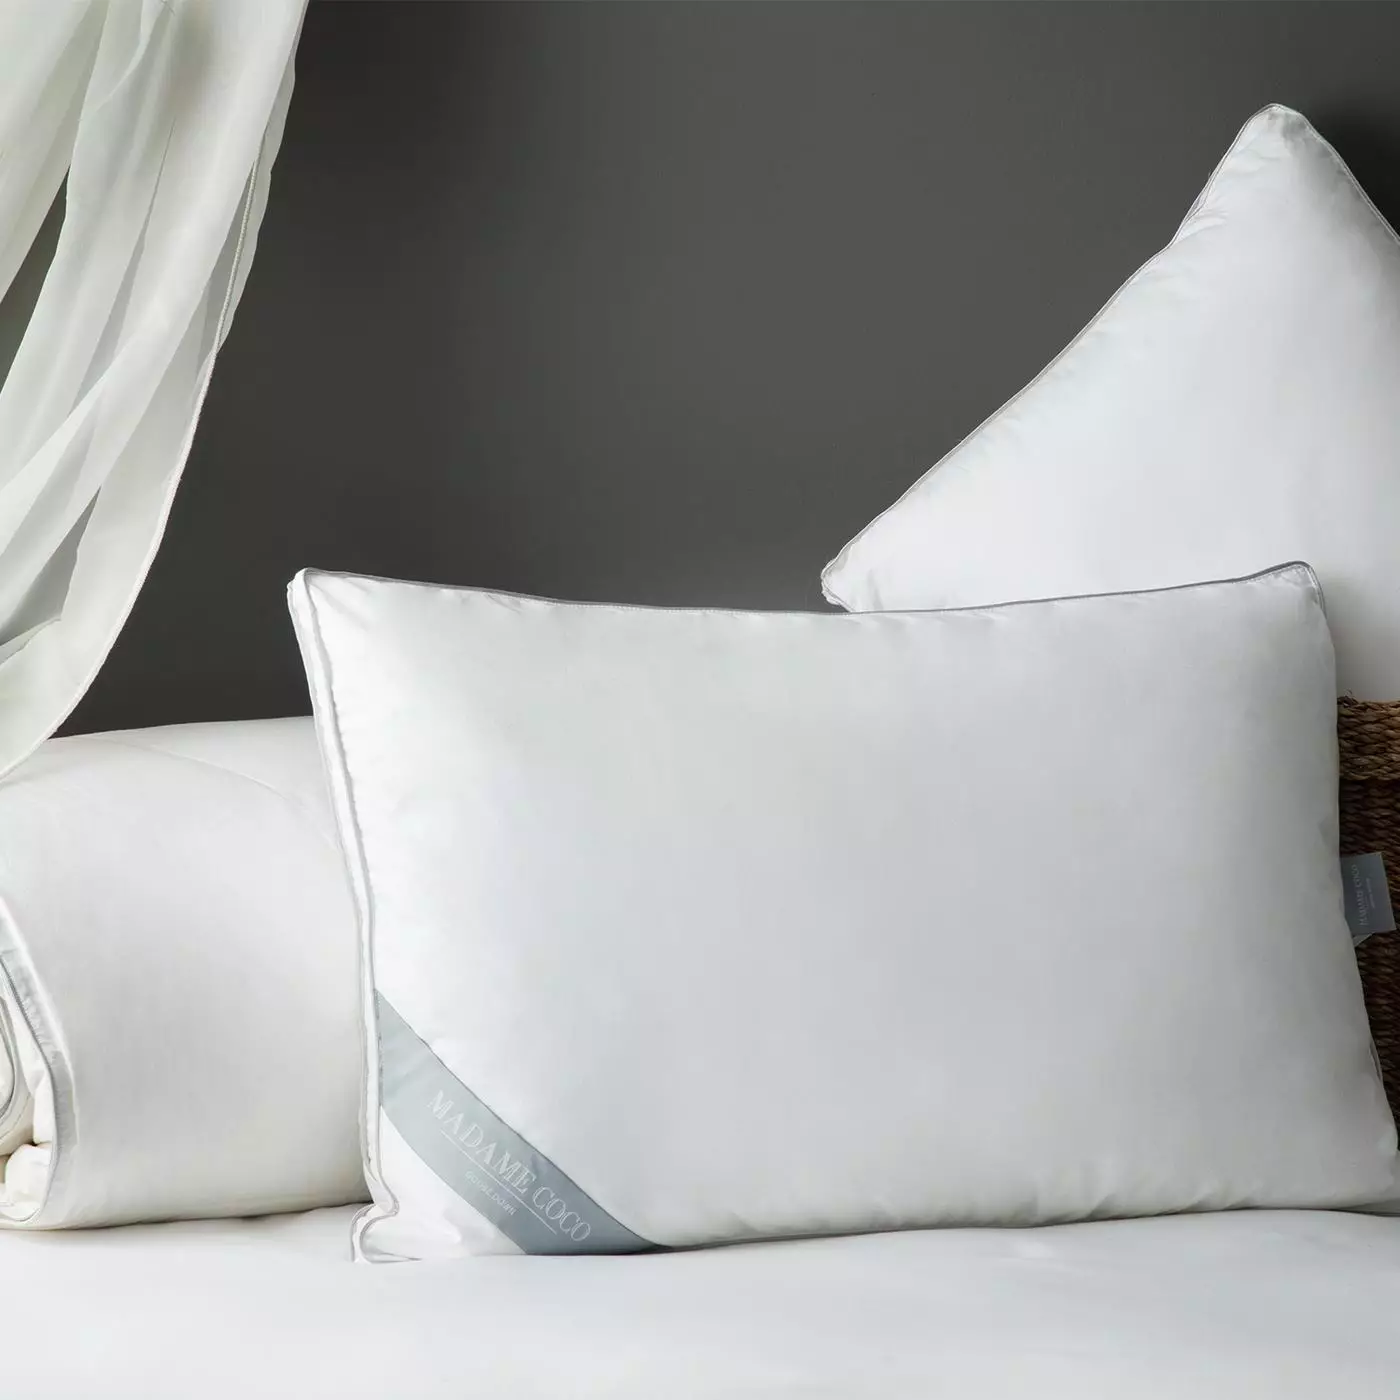 Almohadas de silicona: ¿Qué es la fibra siliconizada? Almohadas para dormir y para asientos. Pros y contras de almohadas con pelotas de rellenos. 20723_6